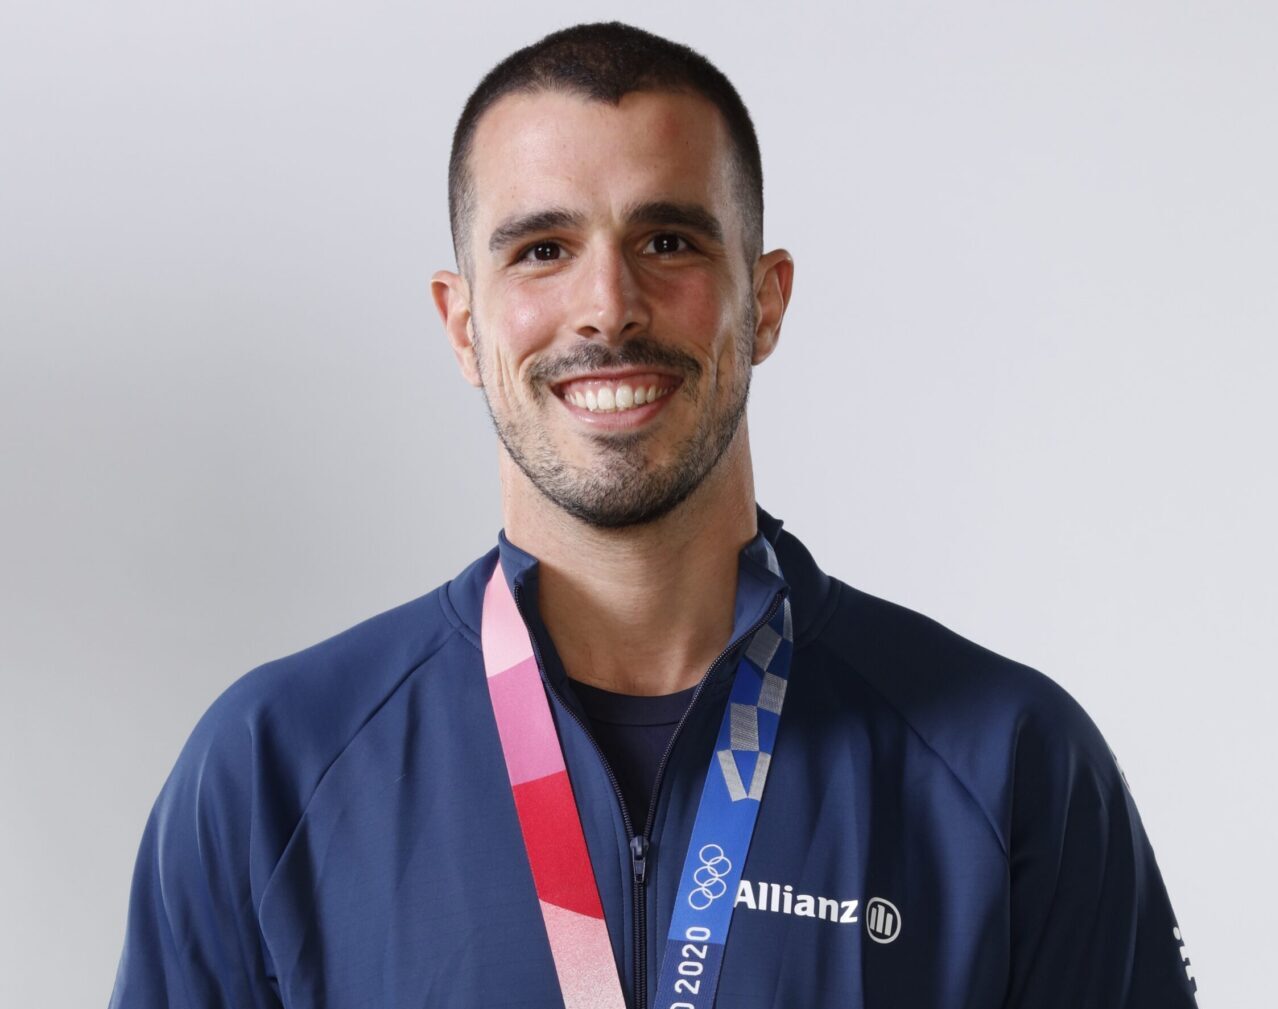 Medalhista olímpico e um dos principais nomes da natação, Bruno integra o time de atletas patrocinados pela Allianz